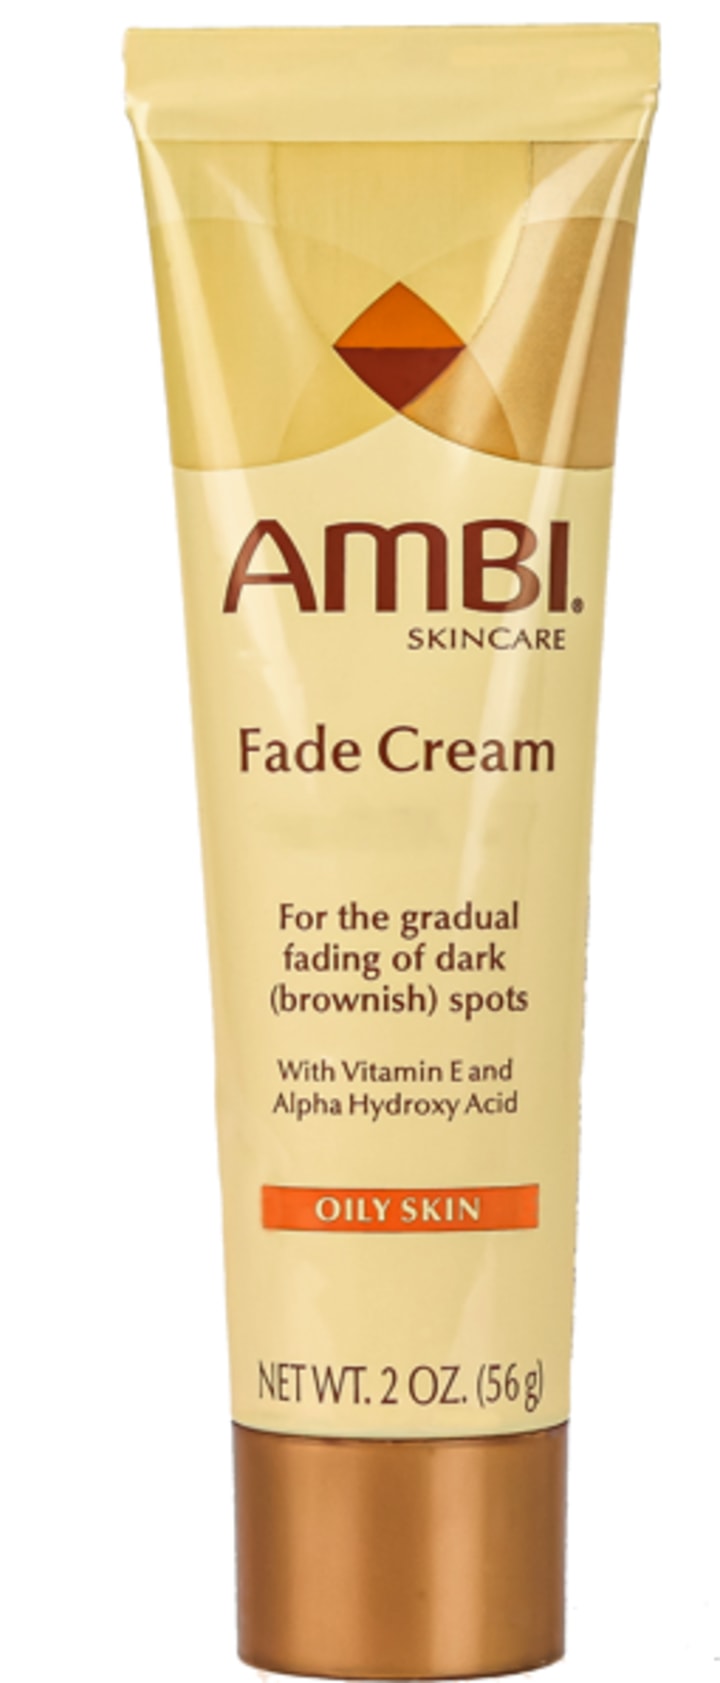 Fade Cream for Oily Skin